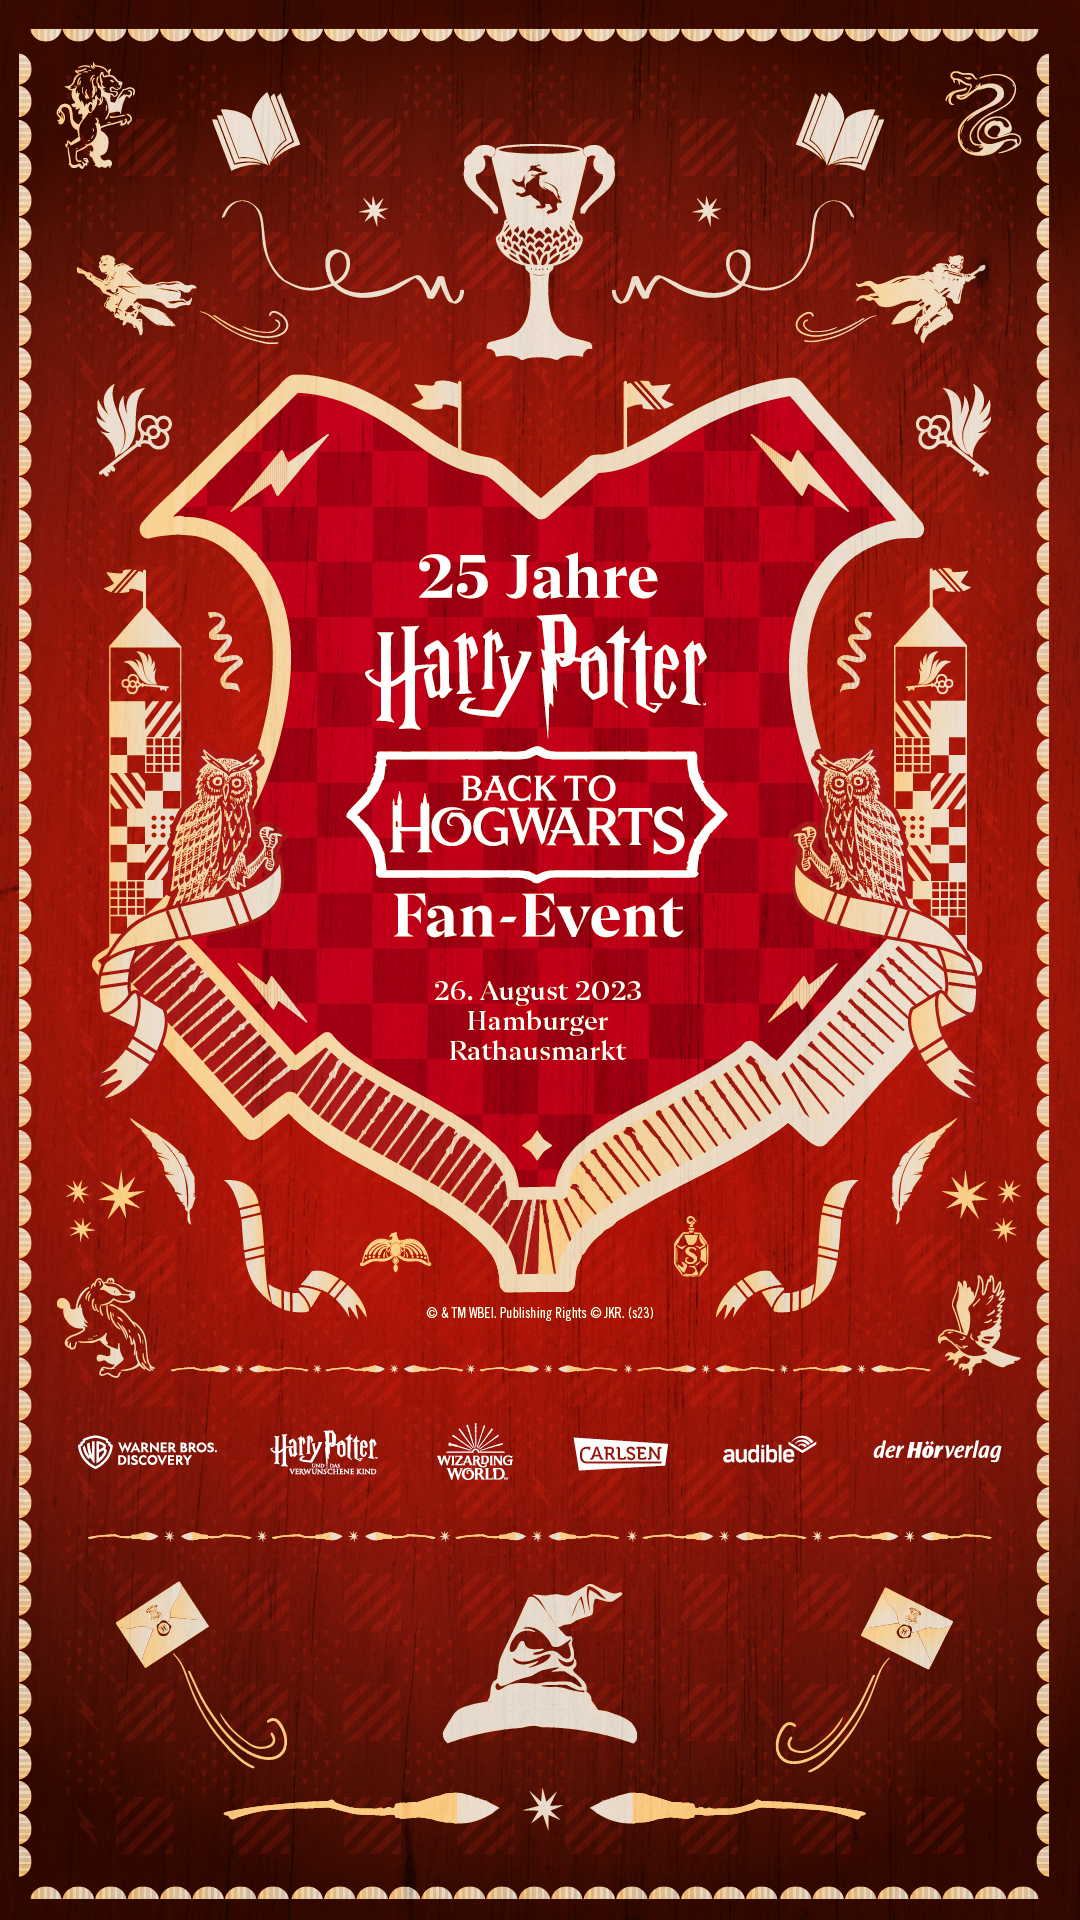 25 Jahre Harry Potter: Das Programm für das große Jubiläumsevent am 26. August auf dem Hamburger Rathausmarkt steht fest!